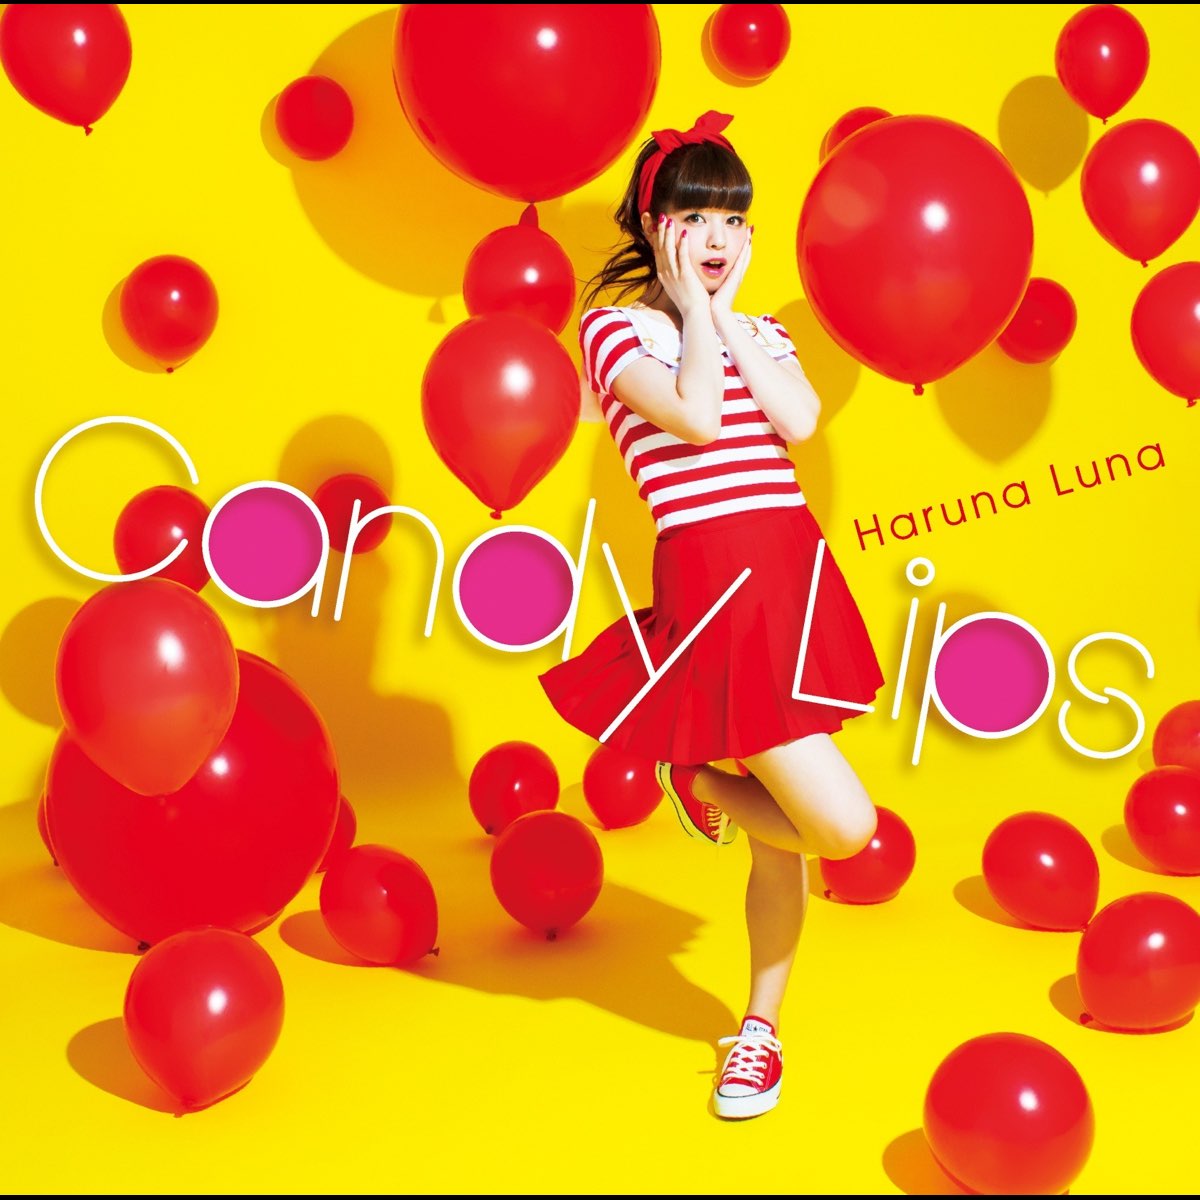 Luna Haruna Candy Lips cover artwork